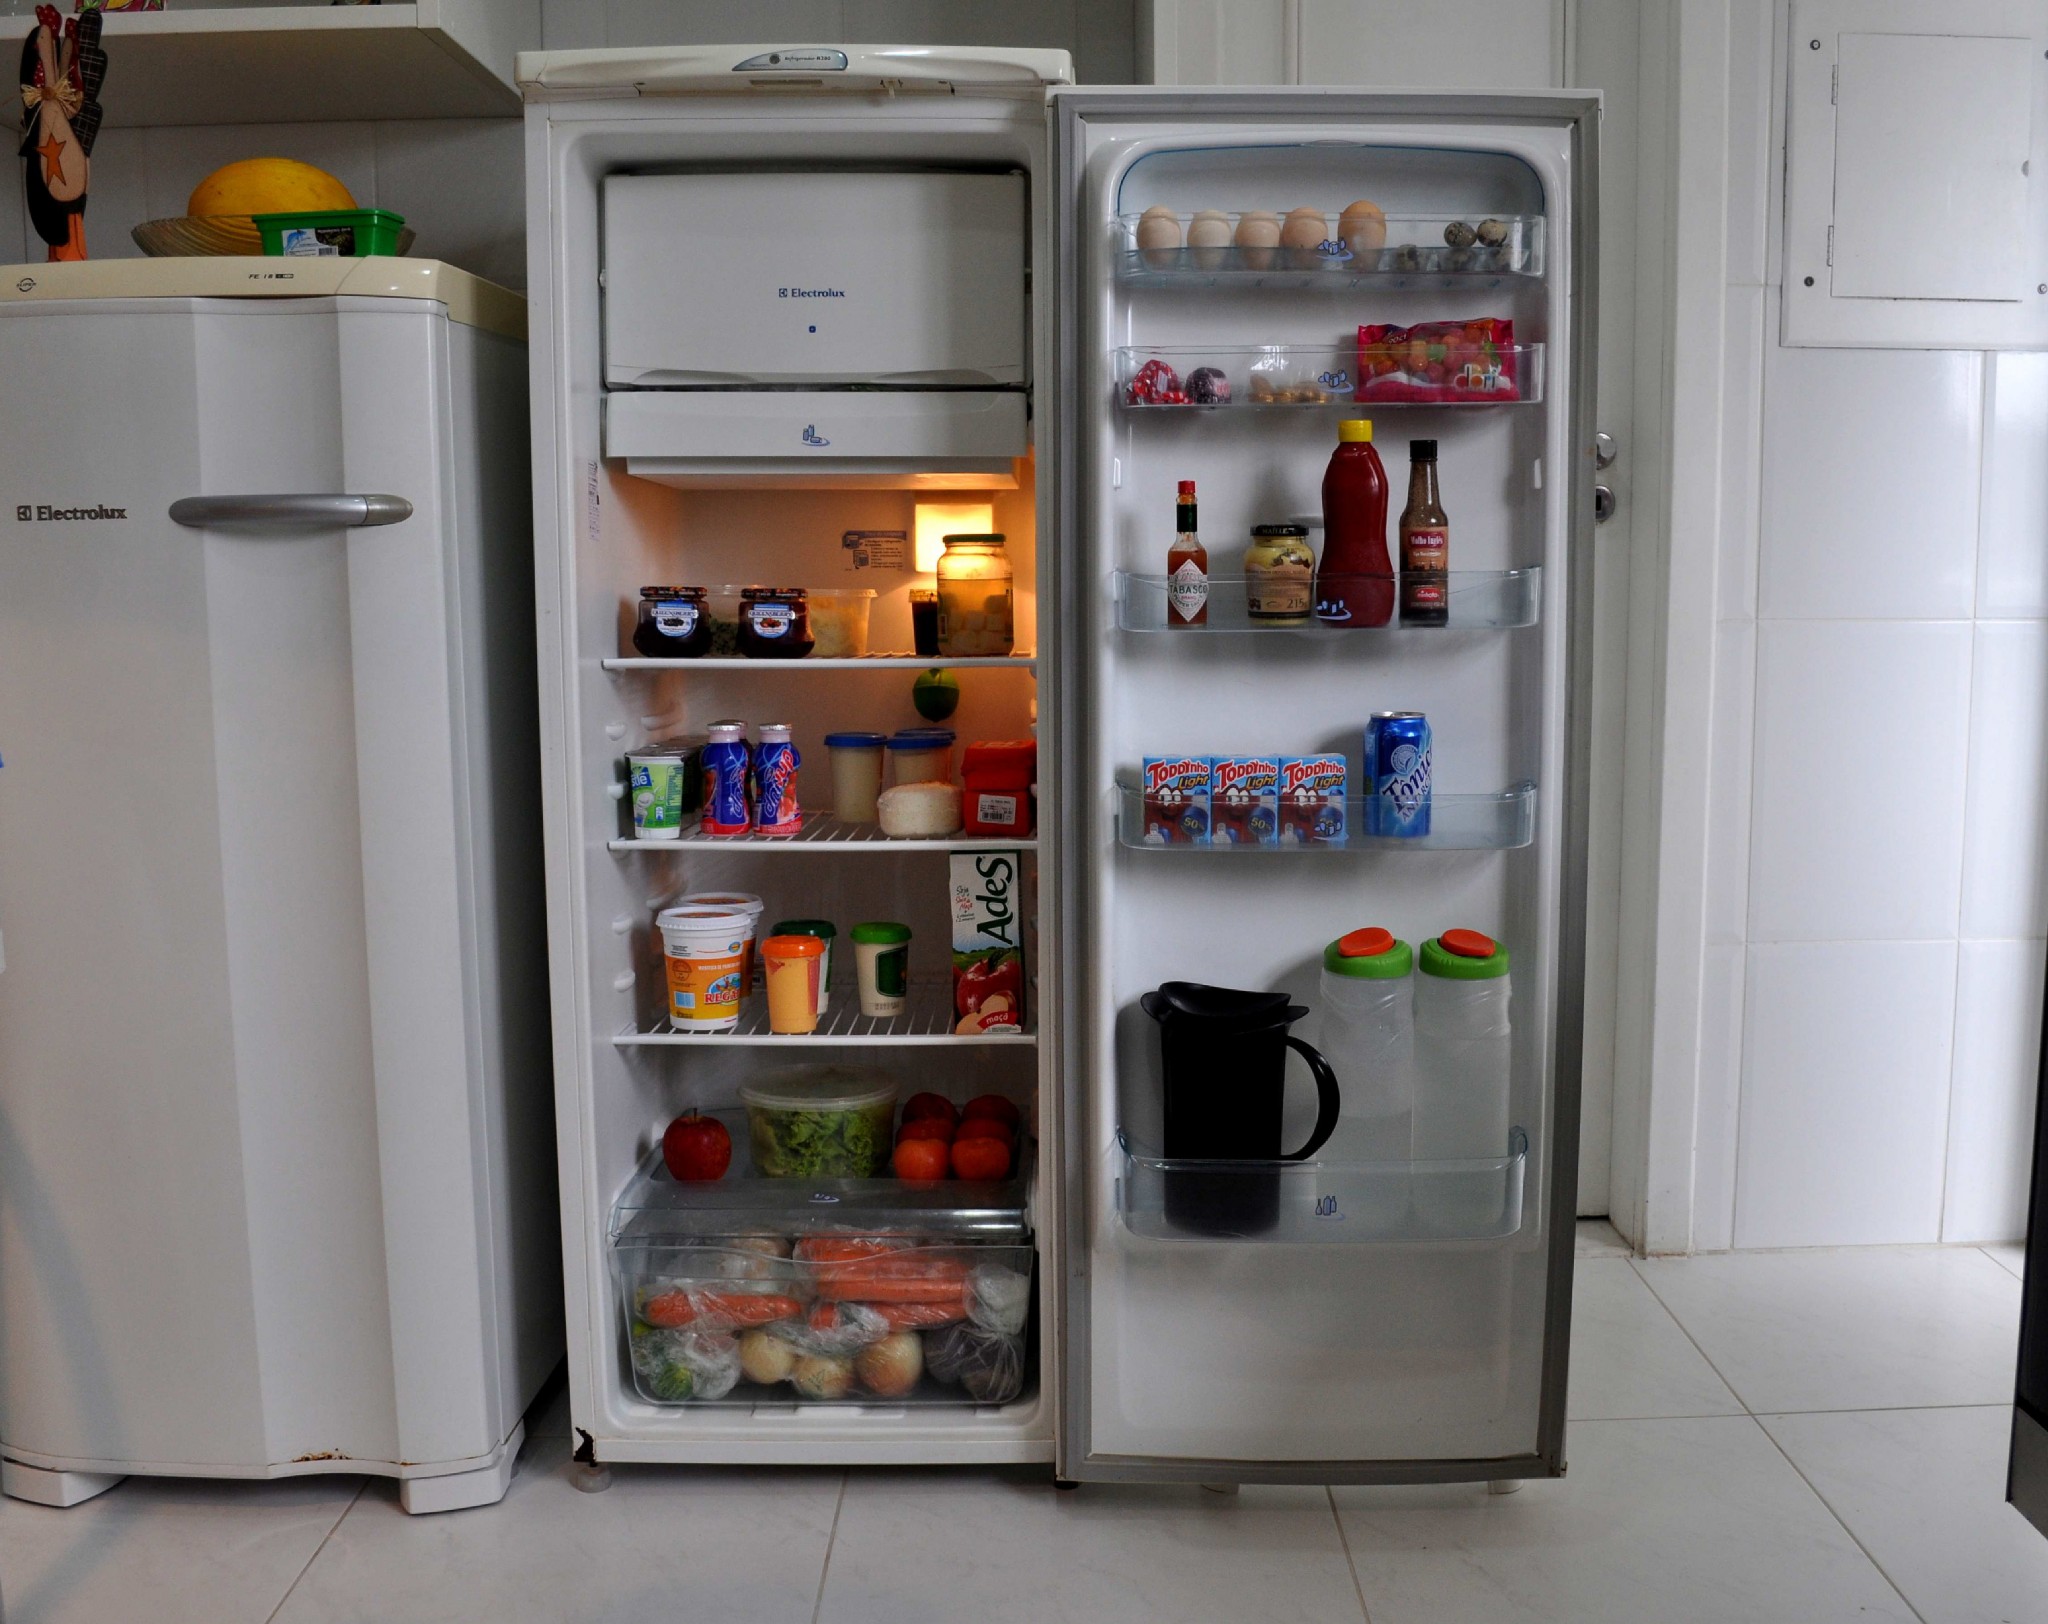 Comment améliorer l'efficacité énergétique du réfrigérateur?